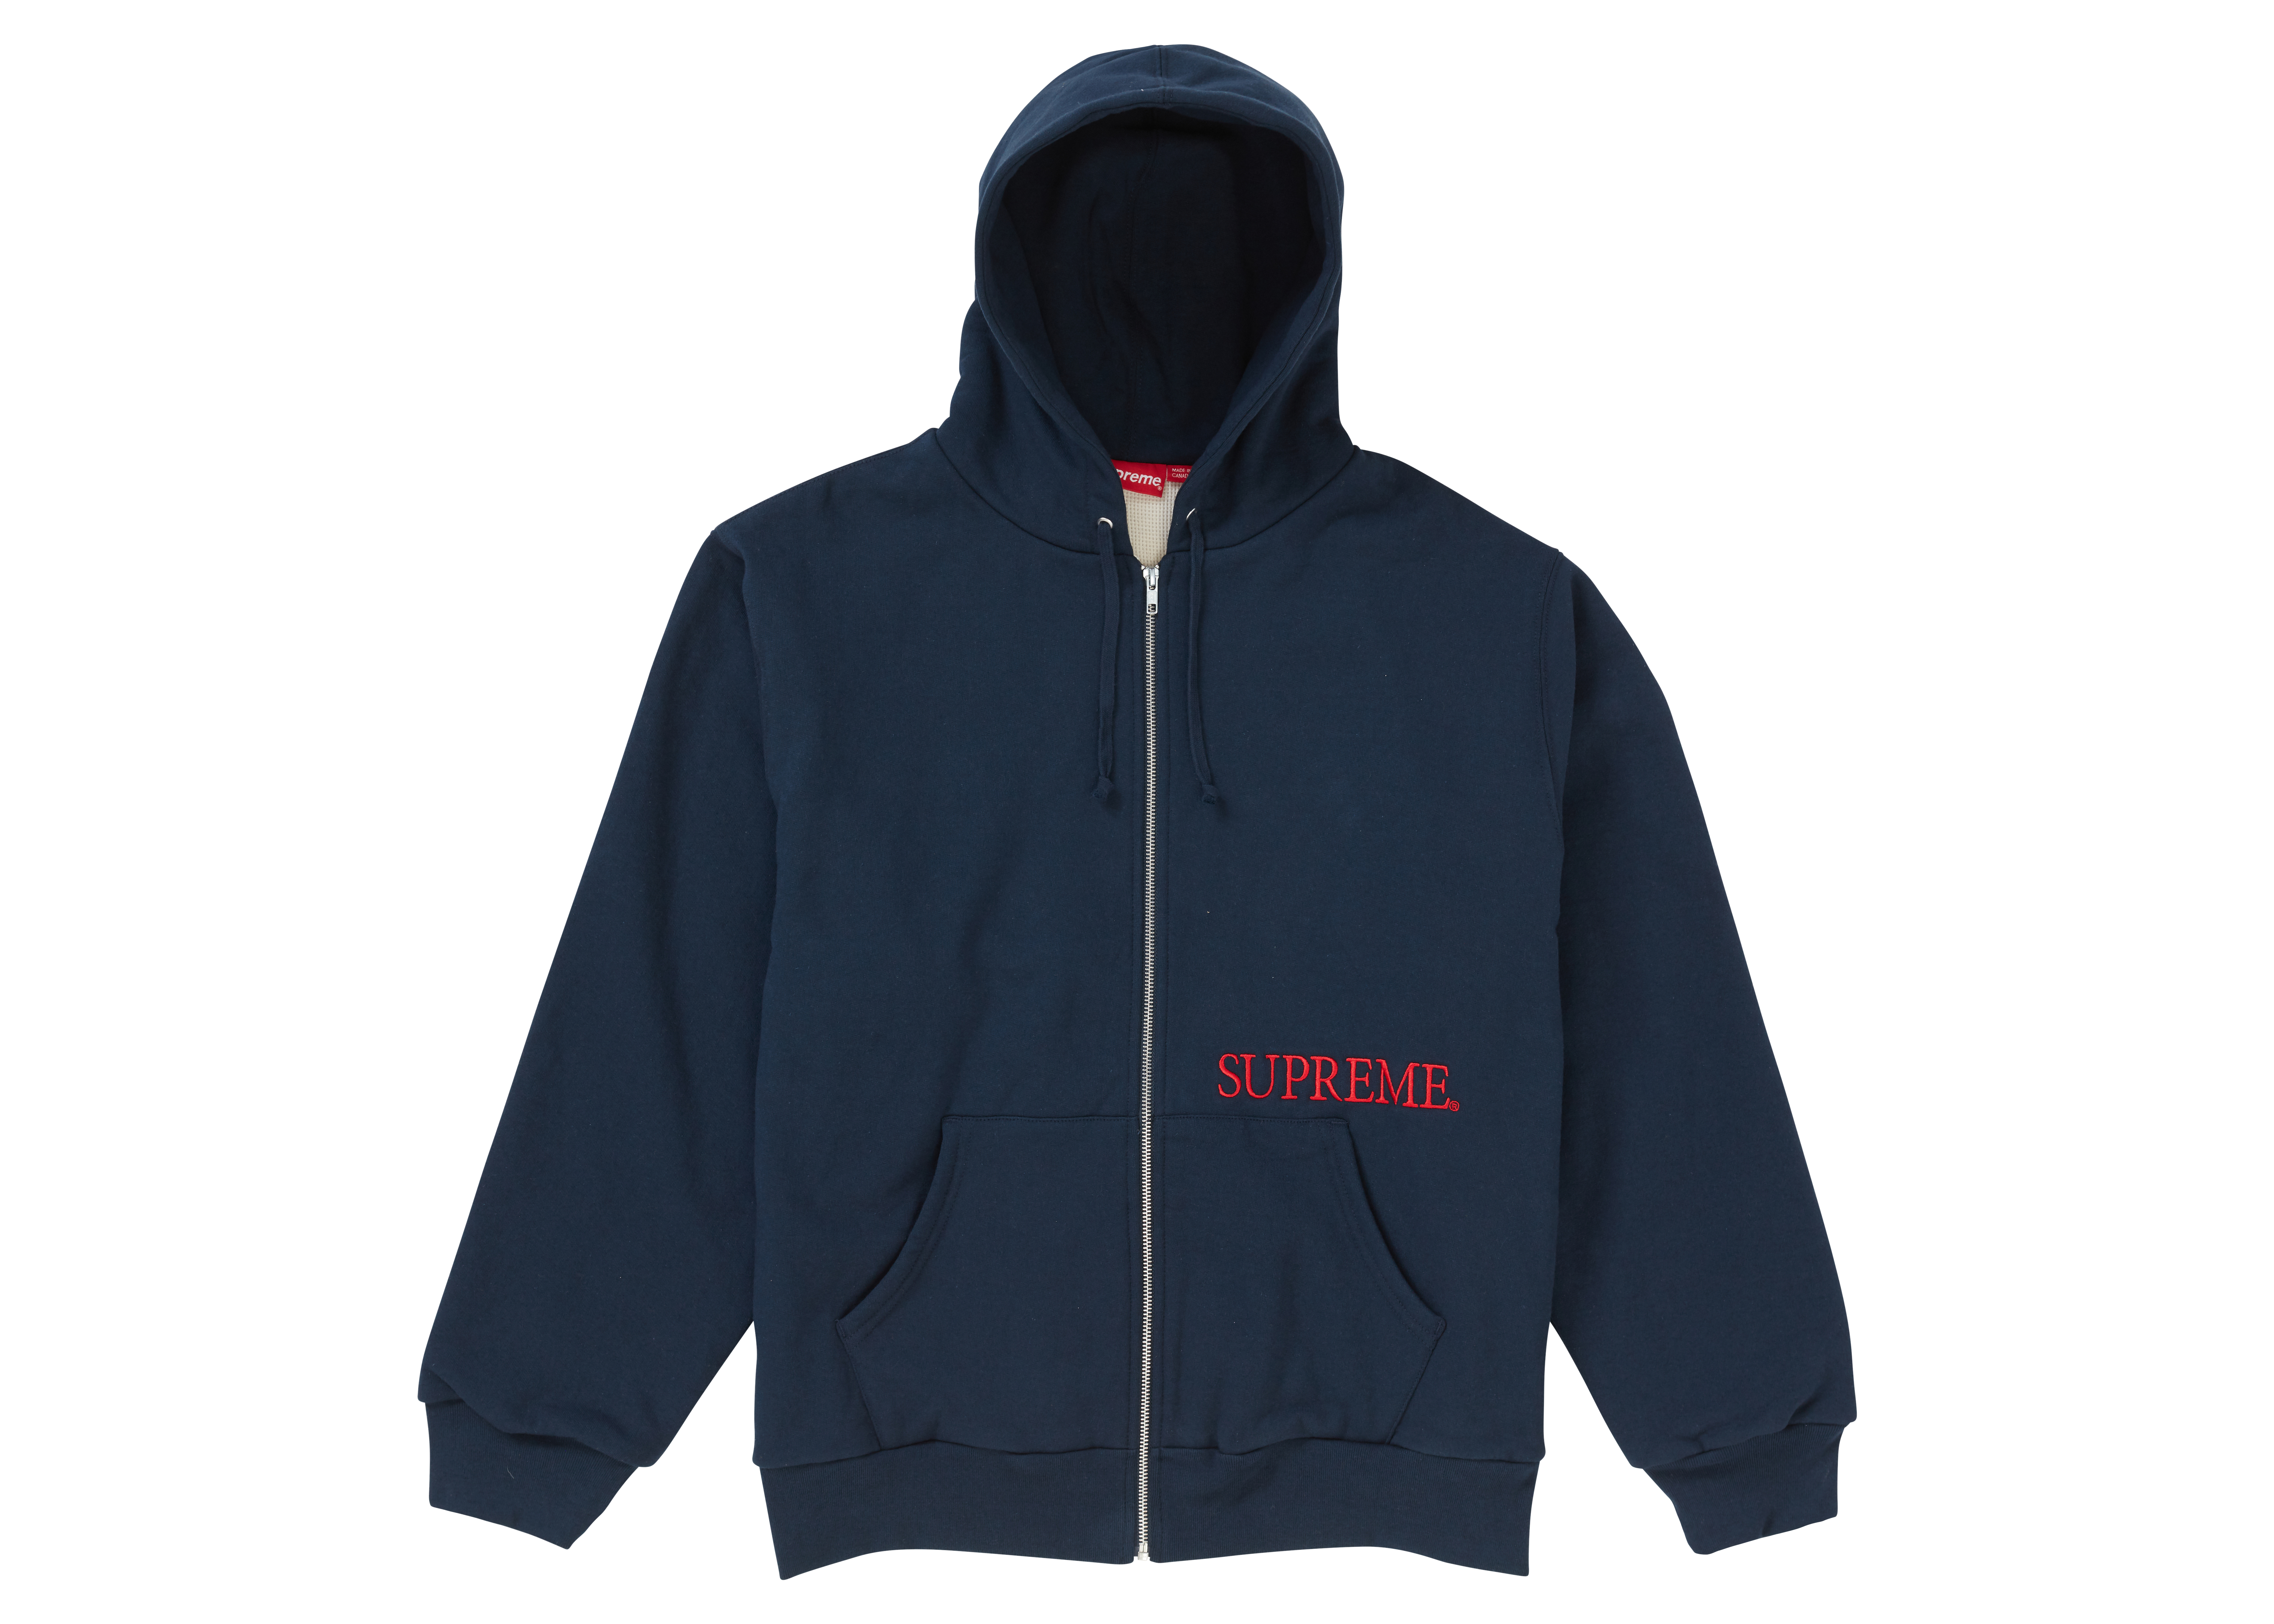 Supreme Thermal Zip Up Hooded Sweatshirt Navy - FW19 Men's - US